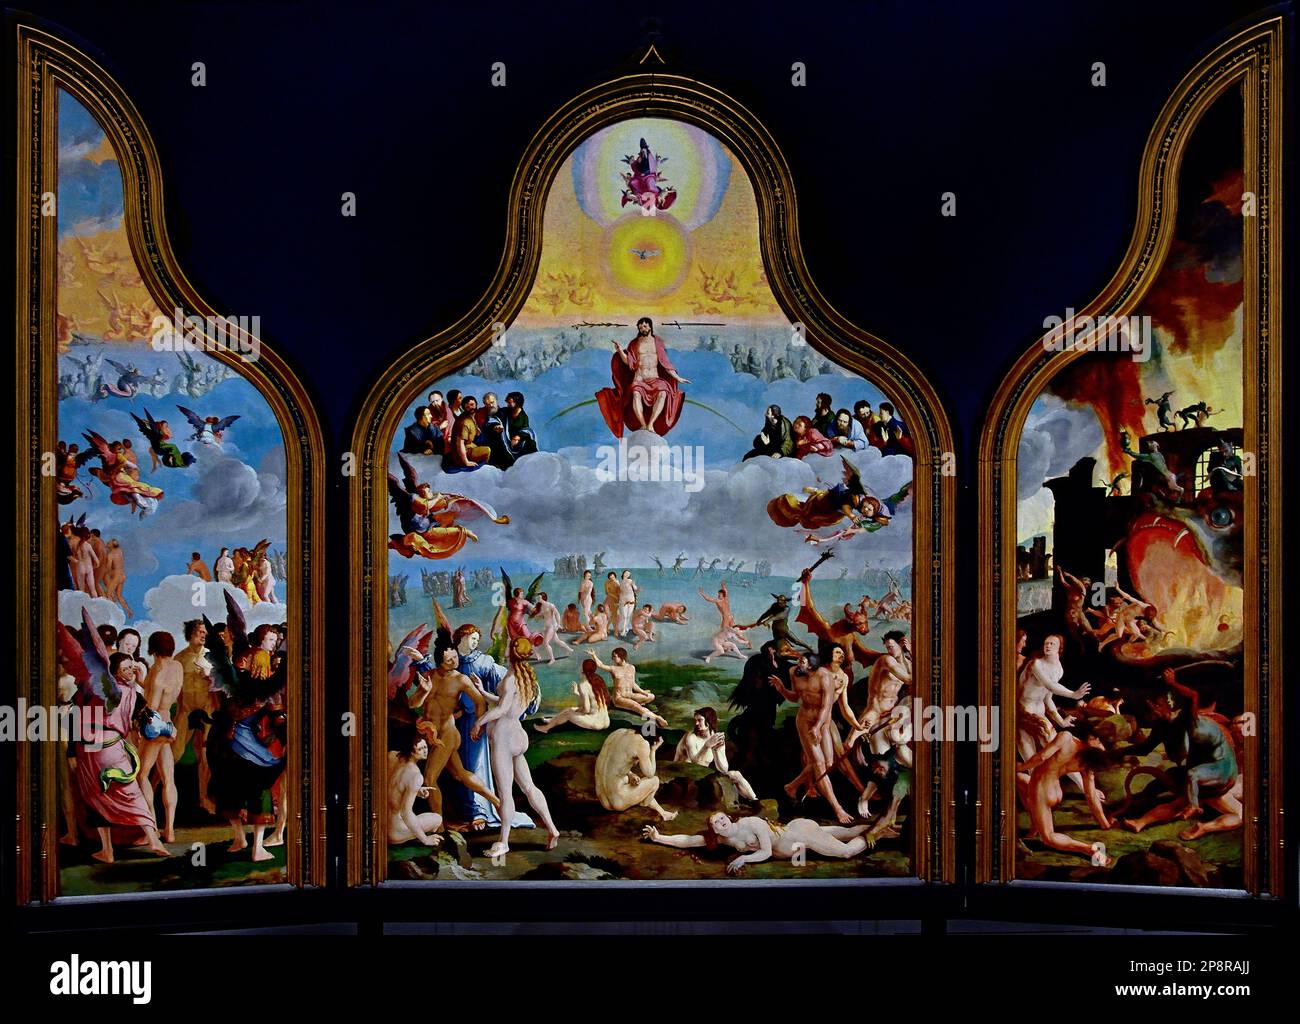 Das letzte Urteil 1527 Triptych von Lucas van LEYDEN, 1494 - 1533, Leiden Niederlande, Holland., Fine Arts Museum, Leiden, Lakenhal, Niederlande, Holland, Niederländisch Stockfoto